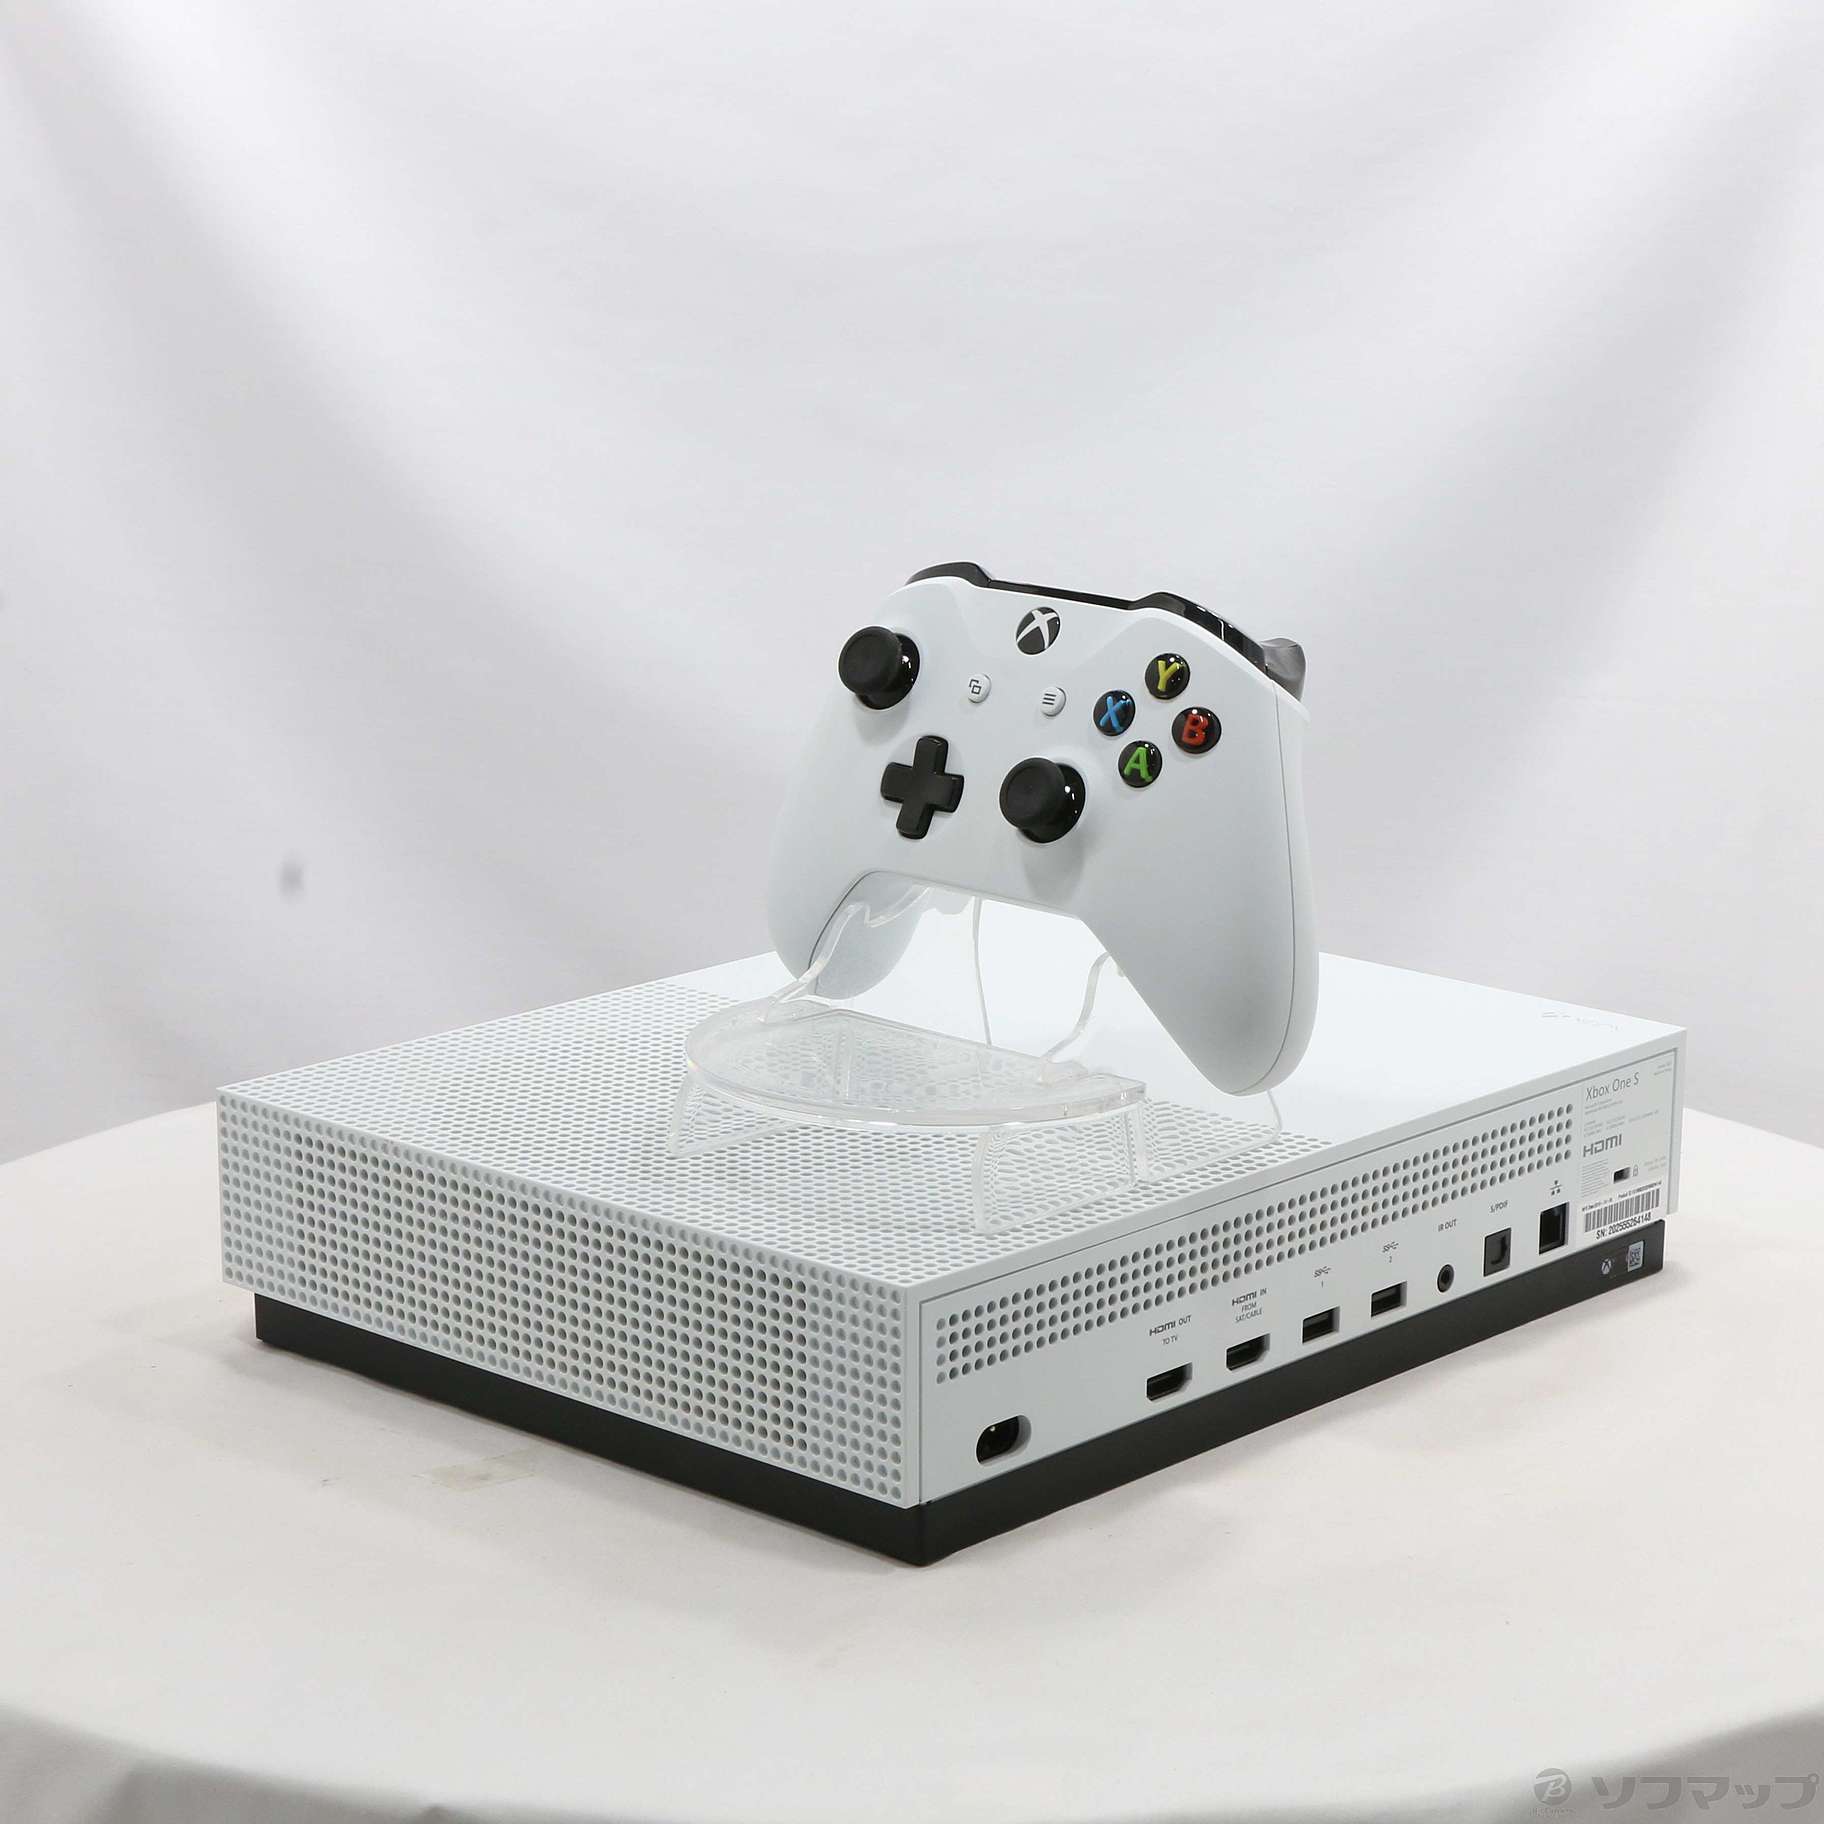 Microsoft Xbox One S 500 GB (Minecraft 同